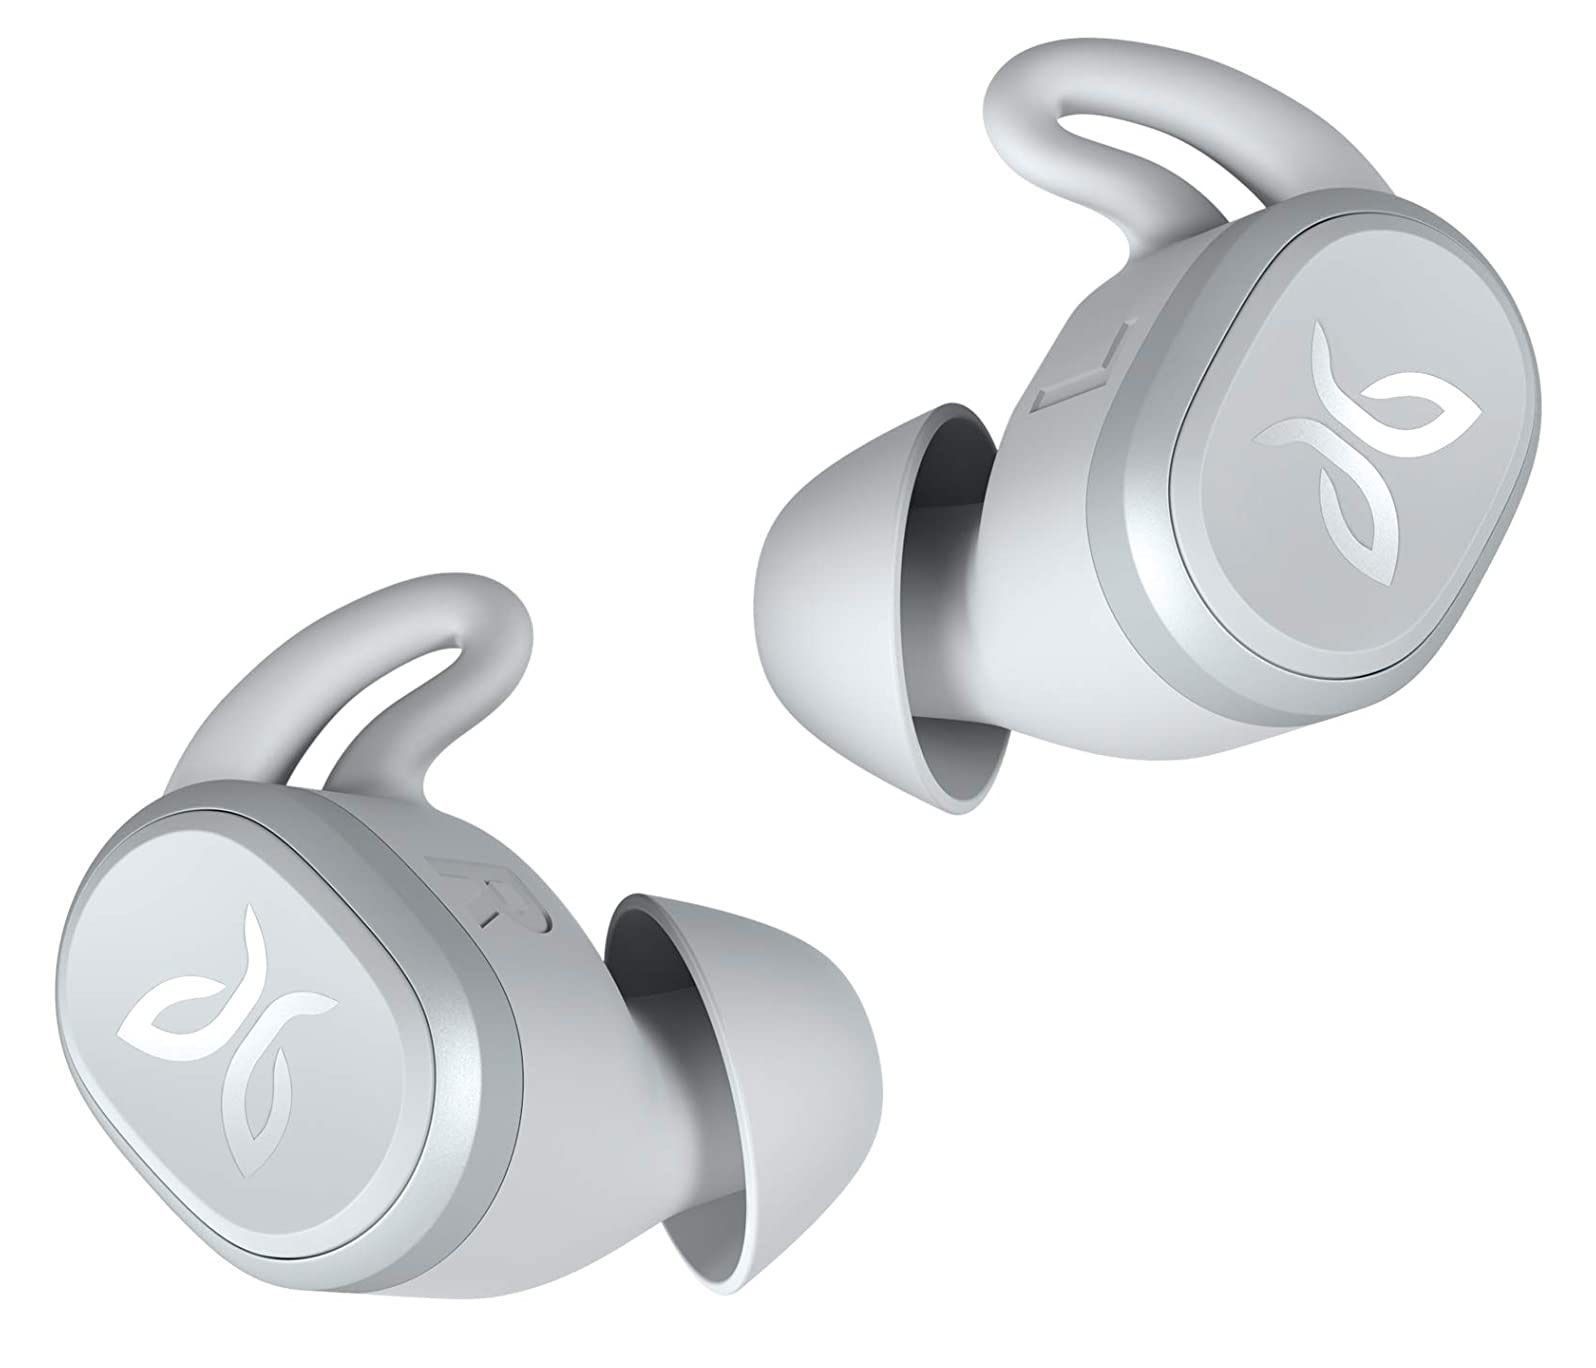 Parhaat lahjat, lahjaideoita naisille - Jaybird Vista True Wireless Bluetooth- ja vedenpitävät kuulokkeet